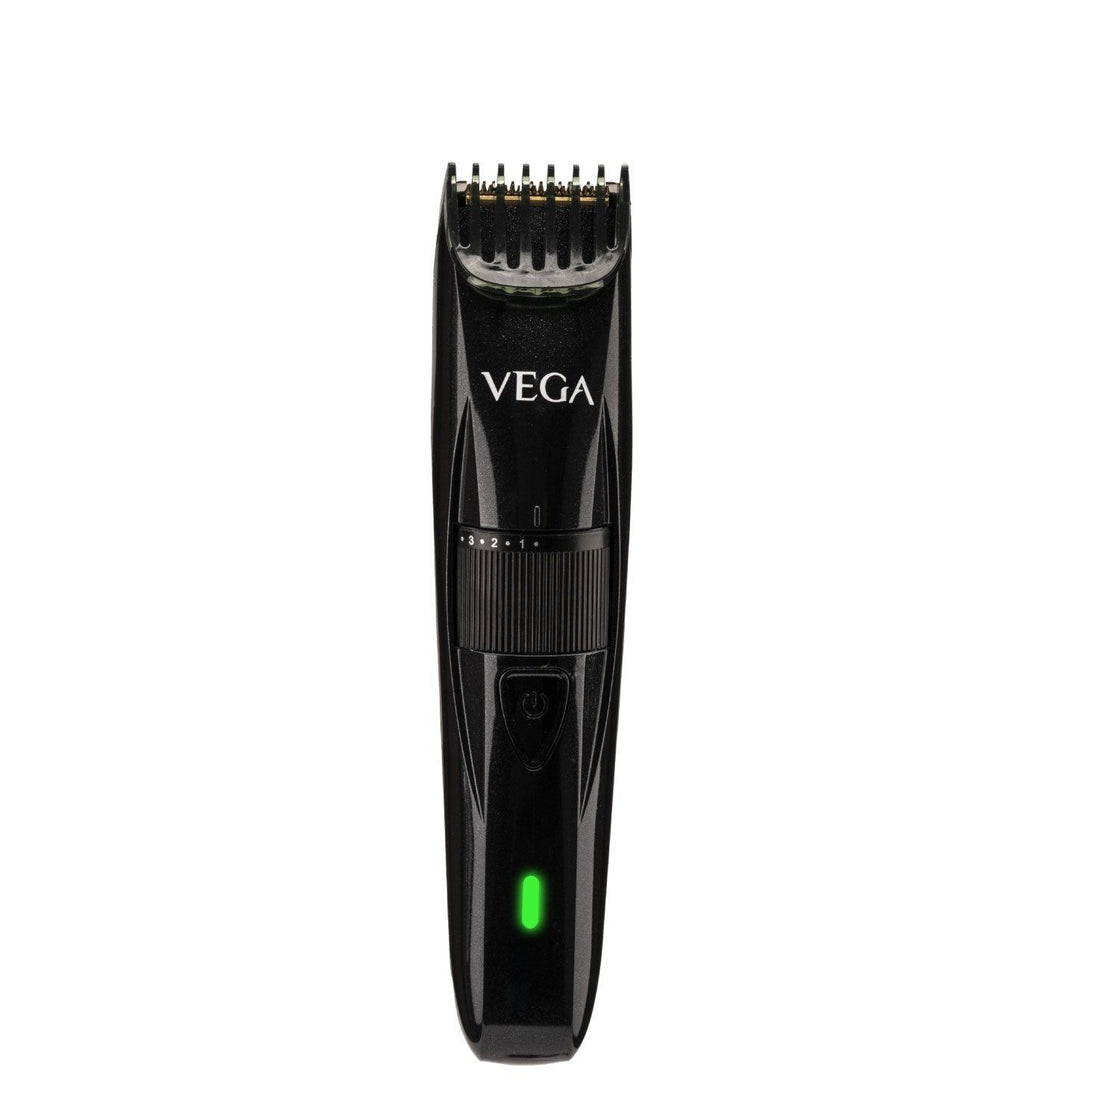 Vega Power Series P-2 Beard Trimmer For Men - Black (Vhth-26)-3